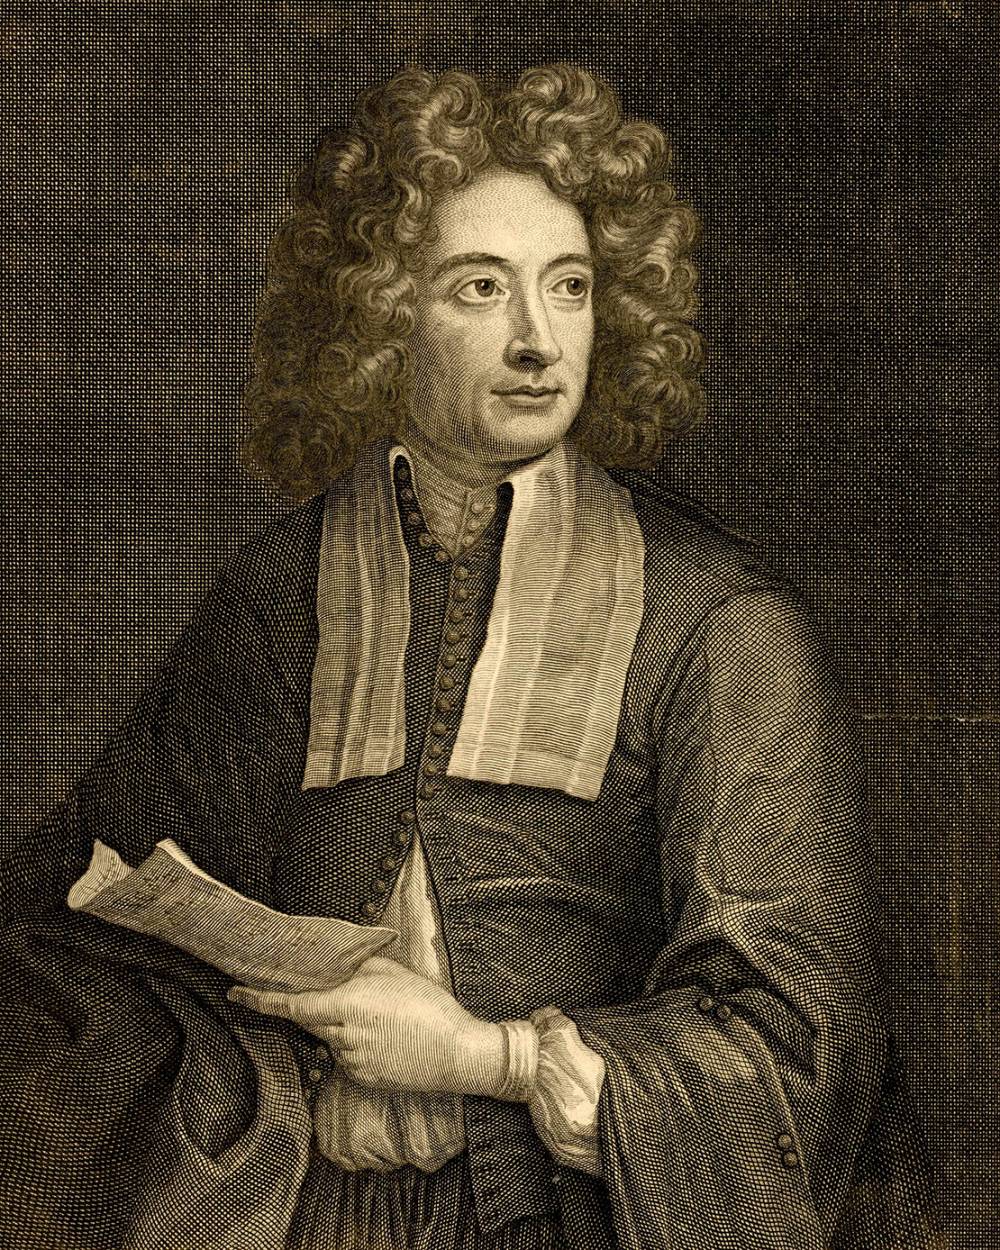 Archangelo Corelli  (1653-1713)